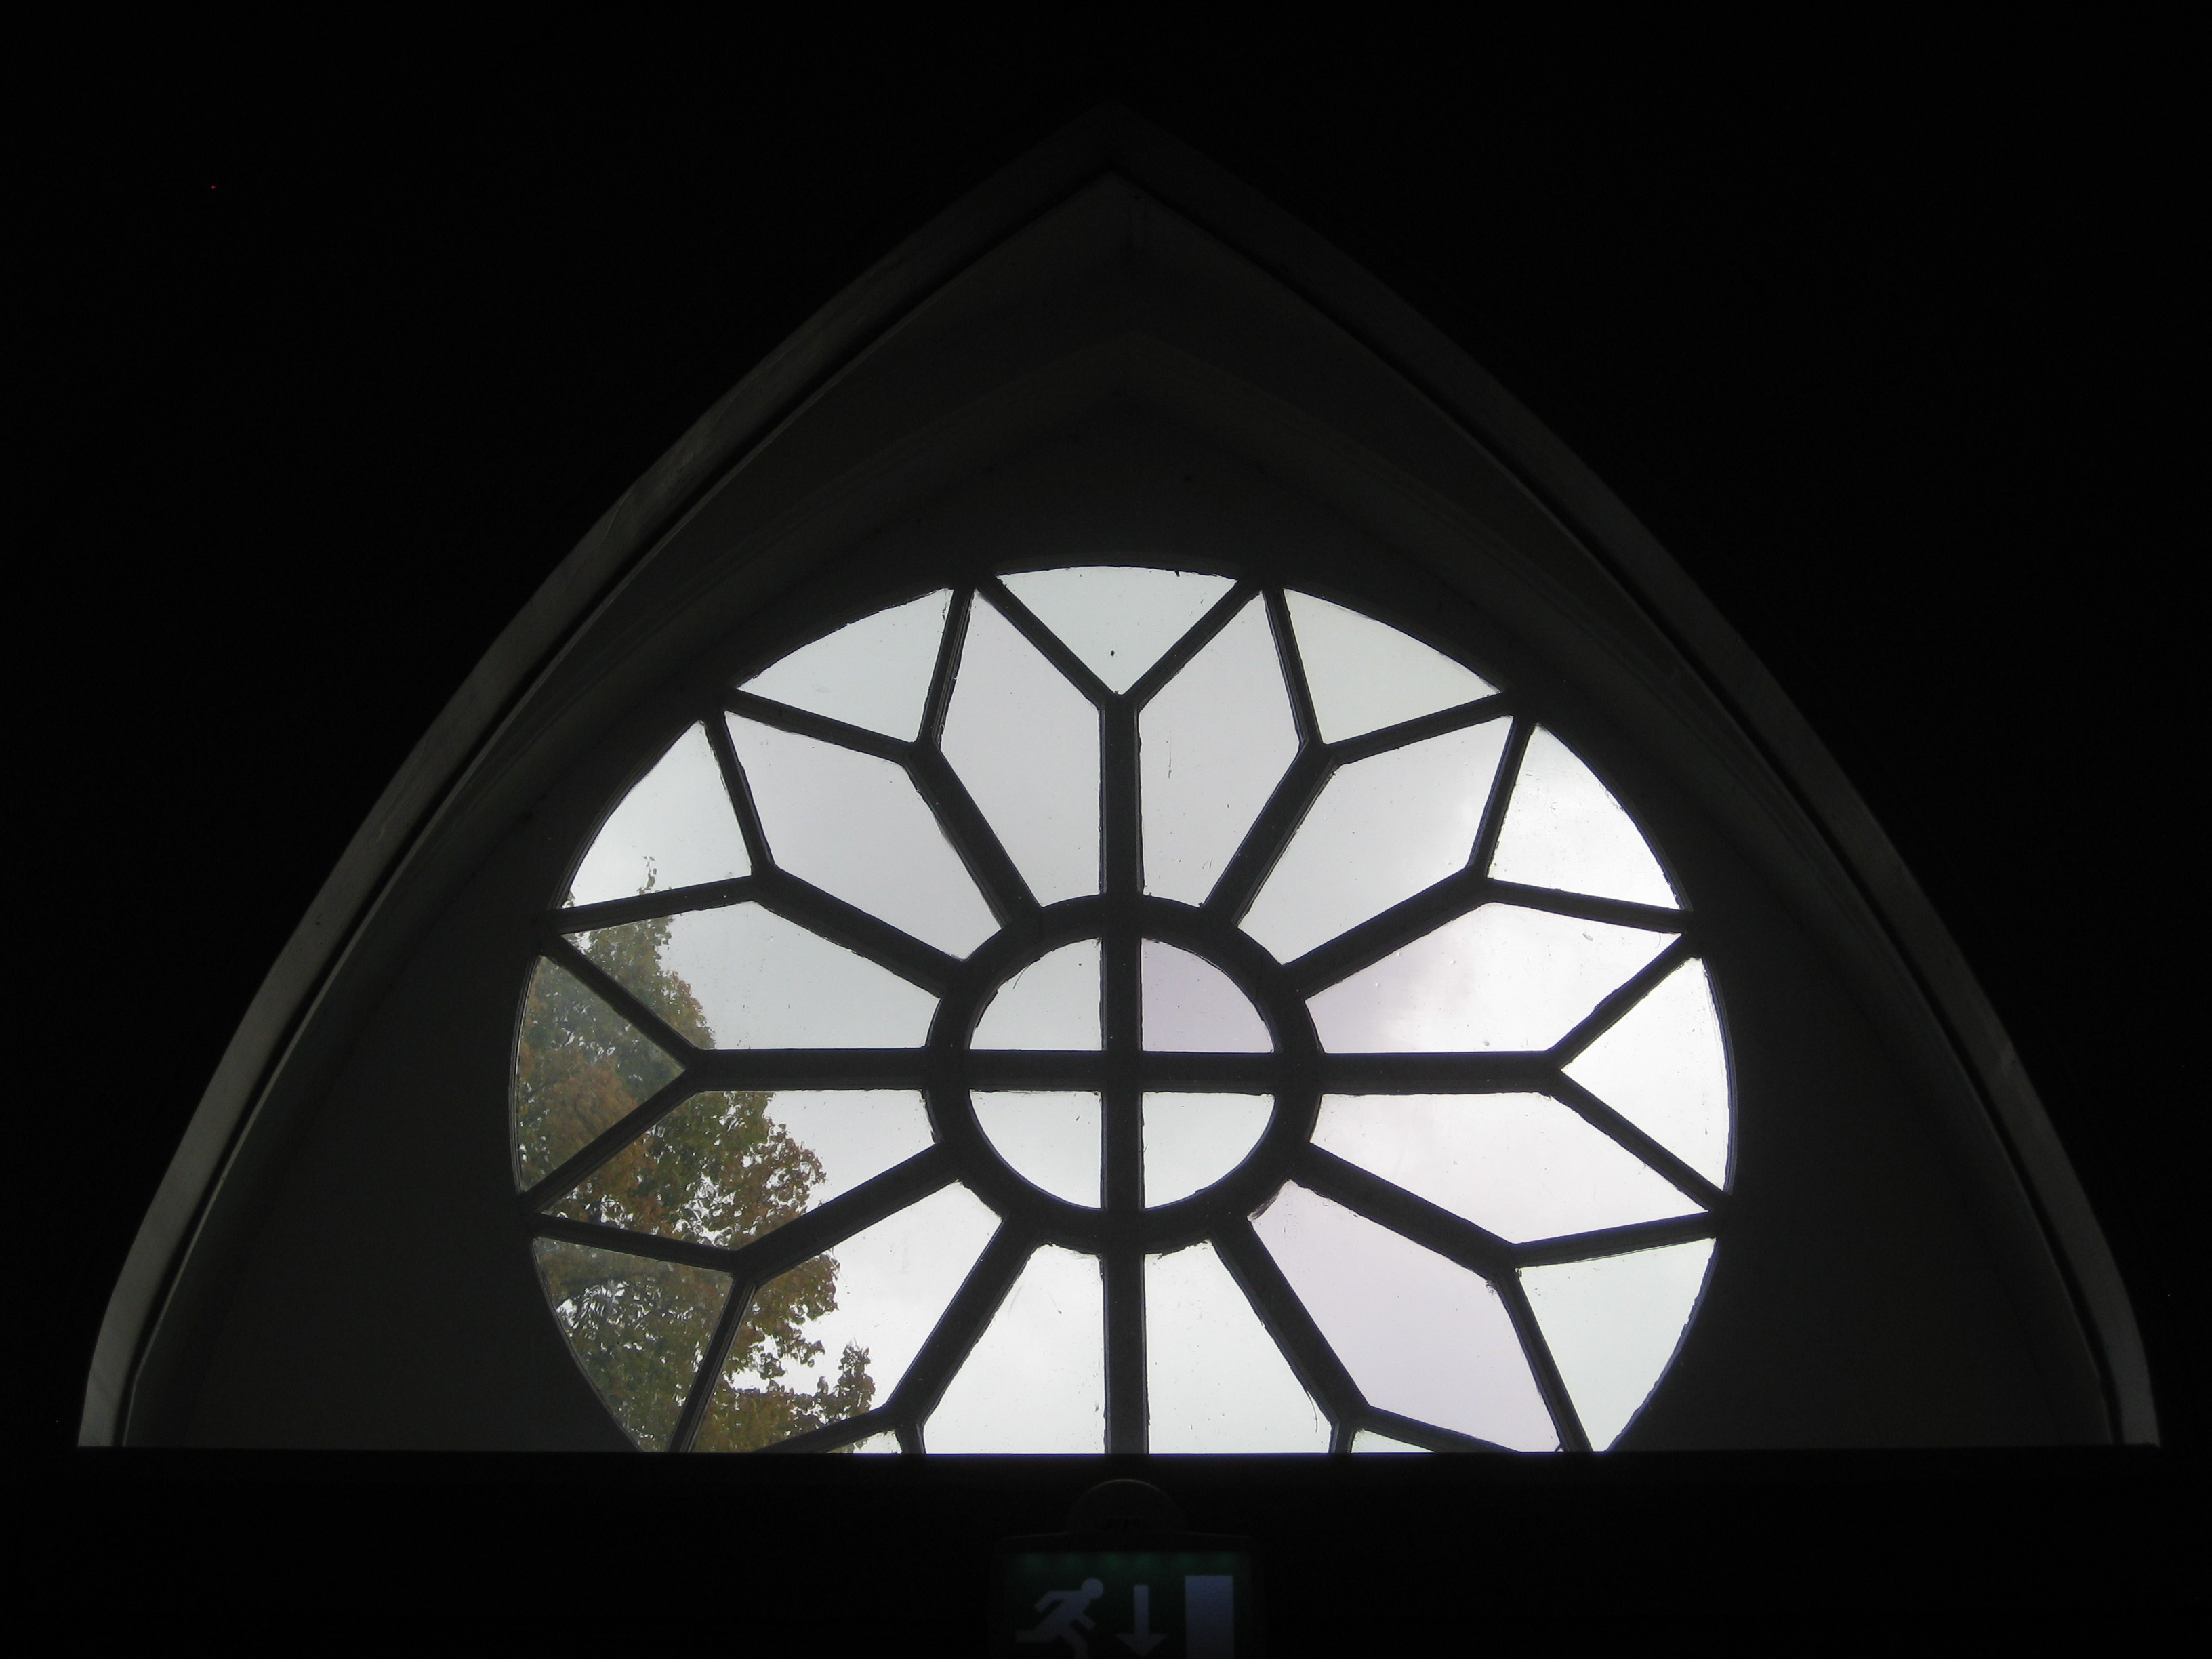 Pyöreä ikkuna, jonka keskellä on ristikuvio.  Kuva on otettu hämärästä sisätilasta; ikkunasta näkyy päivänvaloa ja puun latvaa.